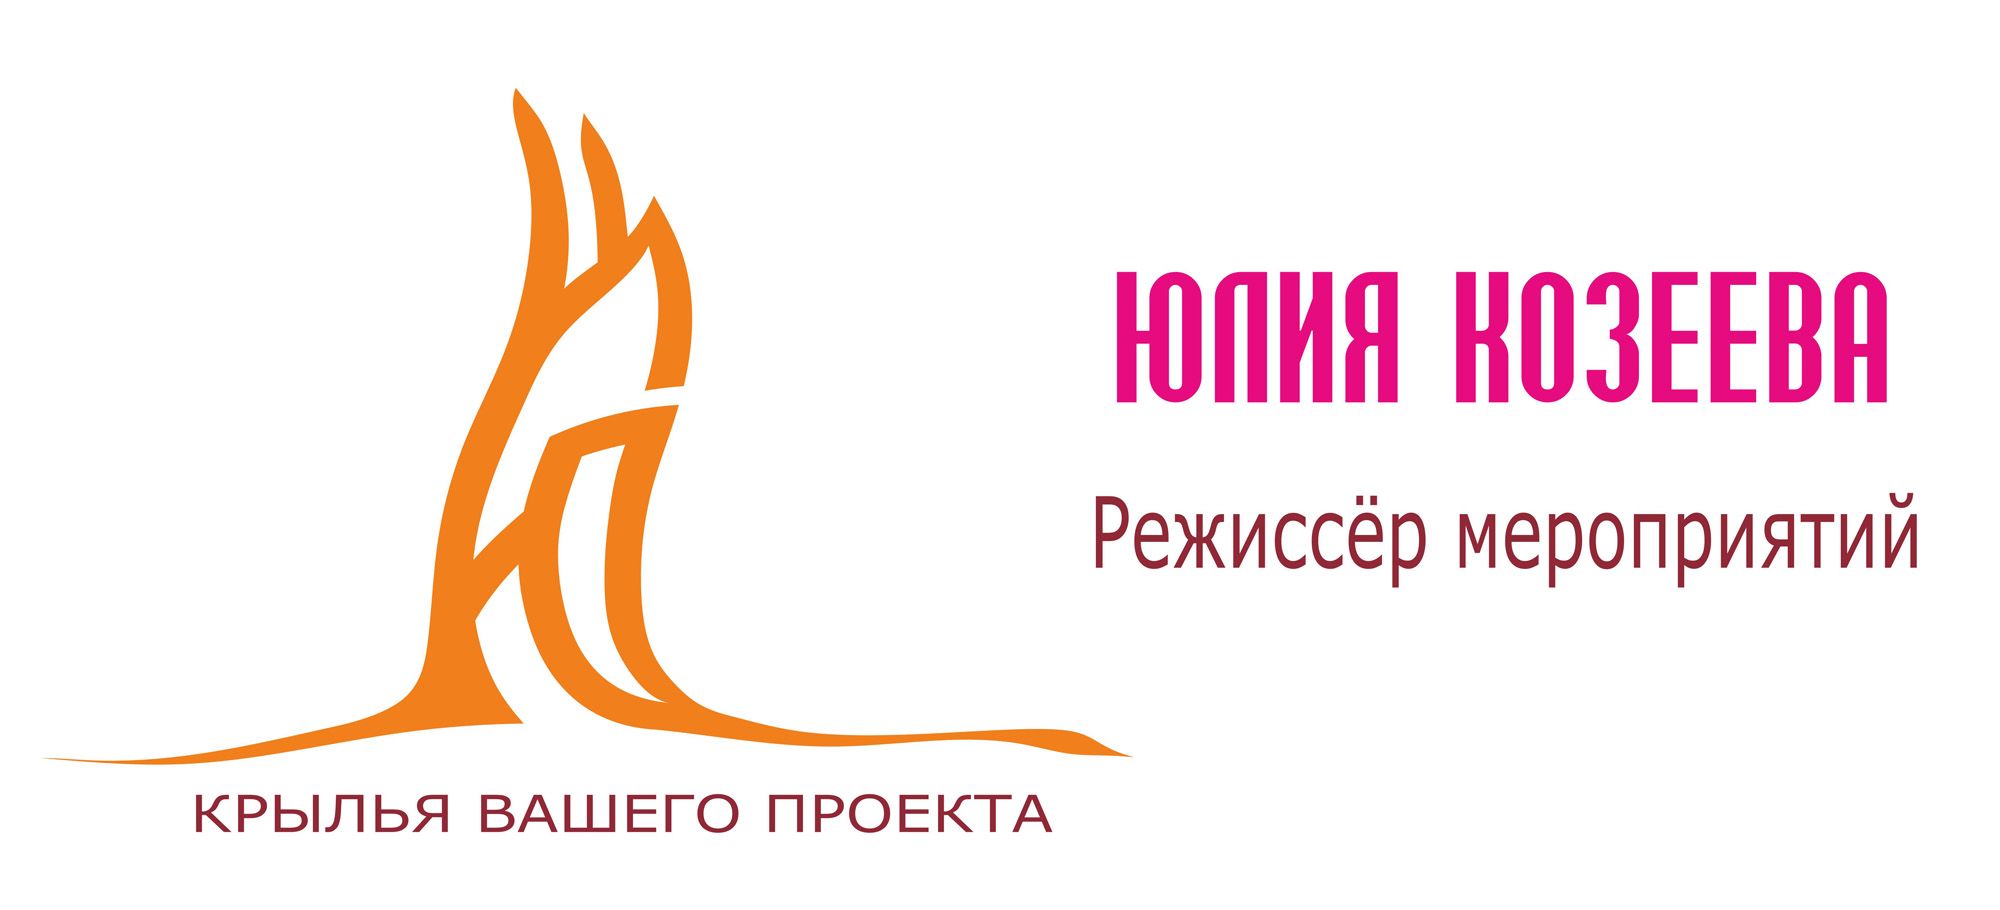 Логотип для режиссера мероприятий - дизайнер bs_78